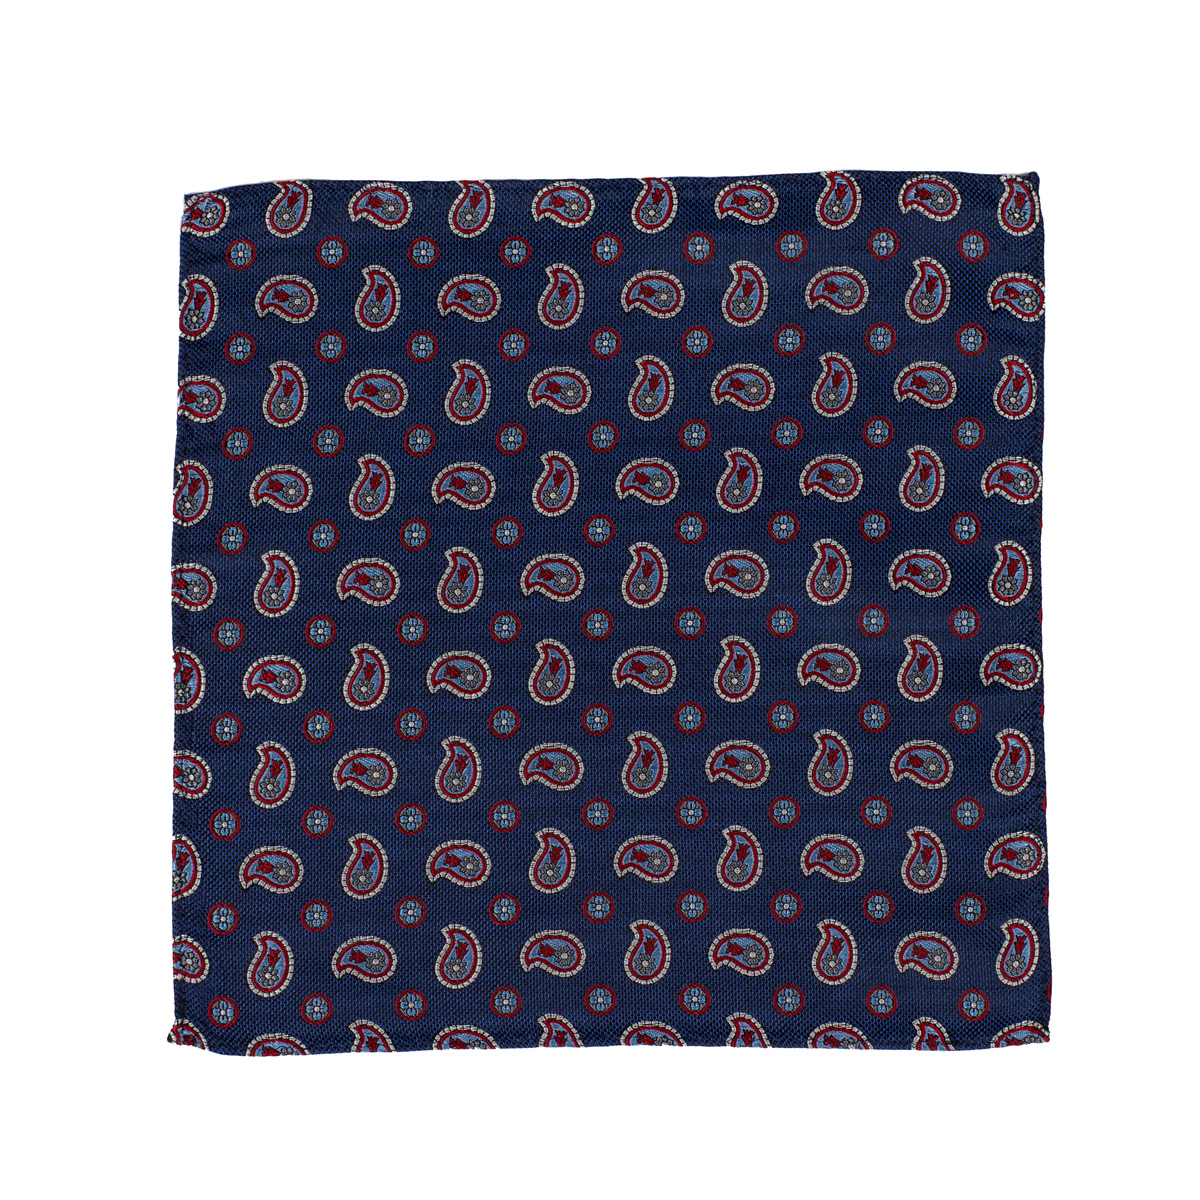 Stoff vom Einstecktuch mit Paisley-Muster in blau-rot